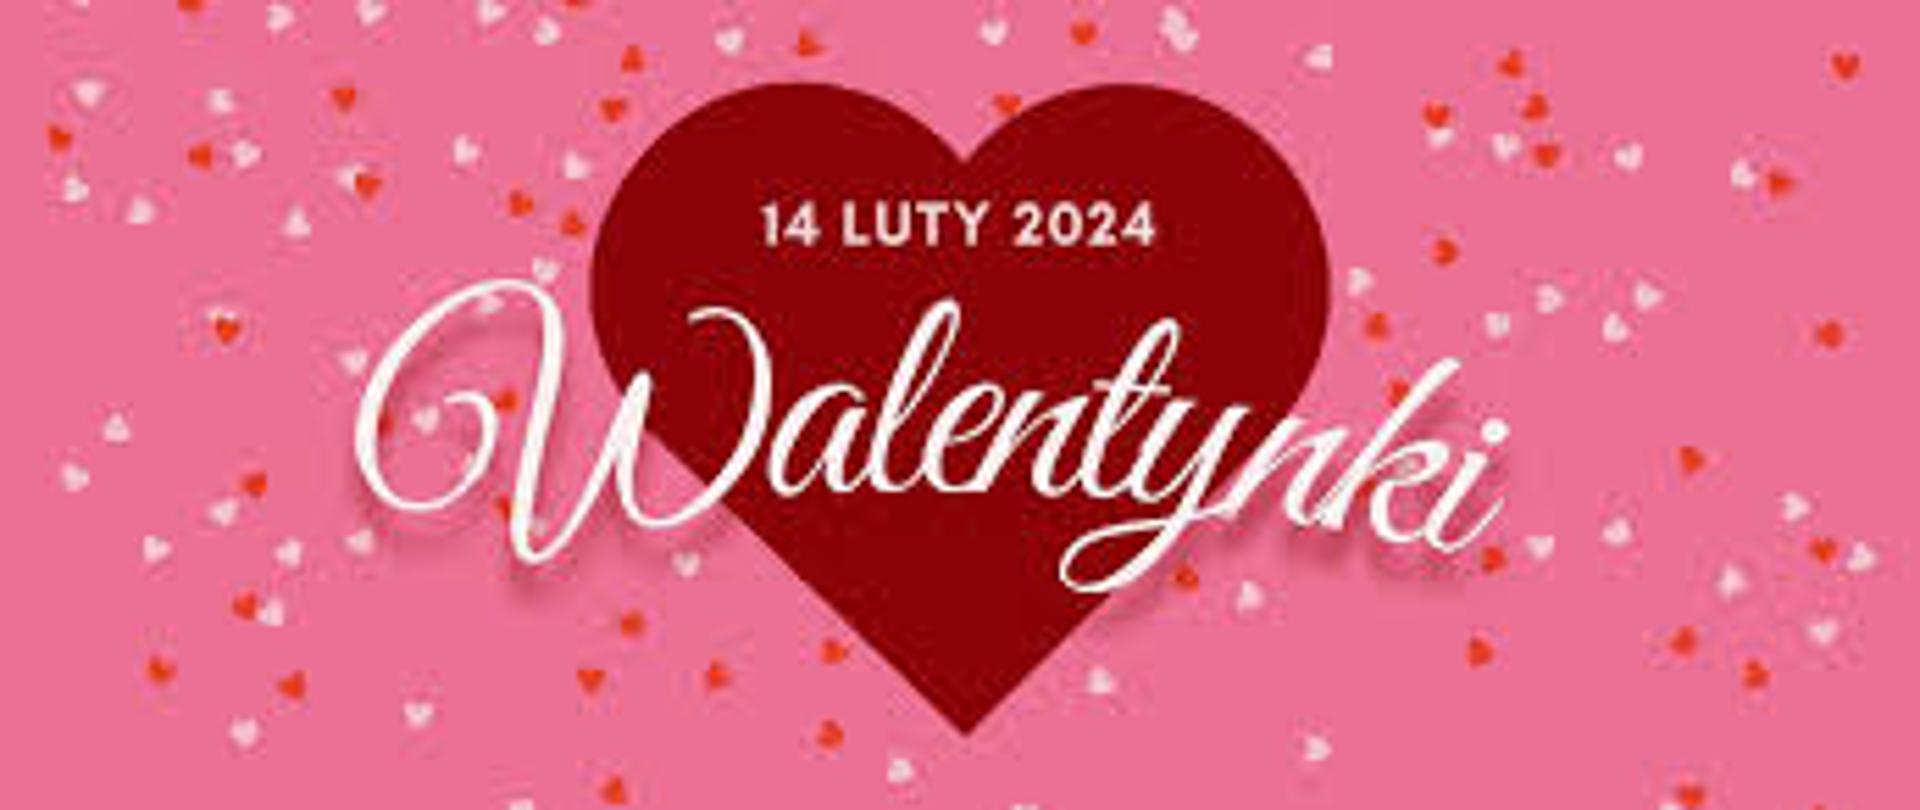 na różowym tle widoczne czerwone serce z białym napisem 14 luty 2024 Walentynki